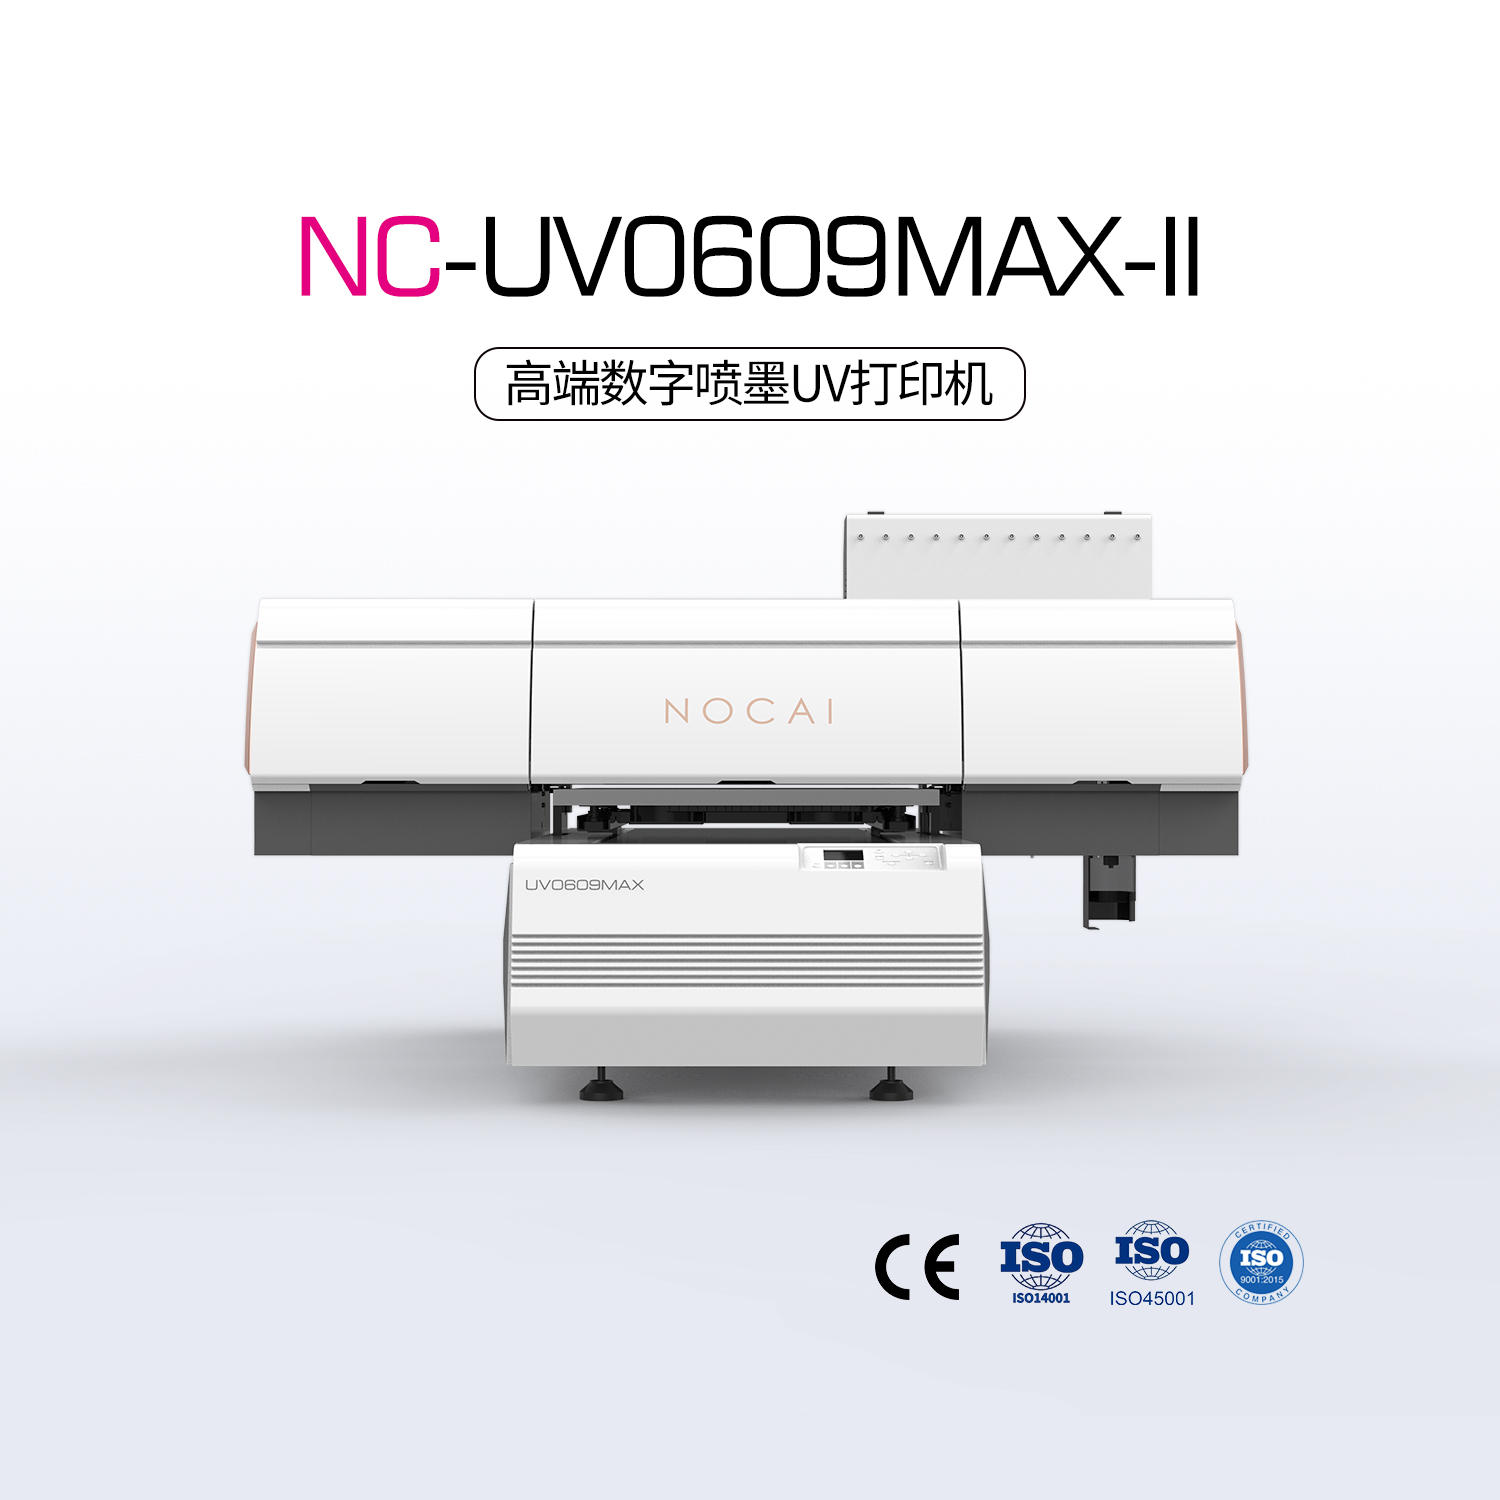 NC-UV0609MAX-II